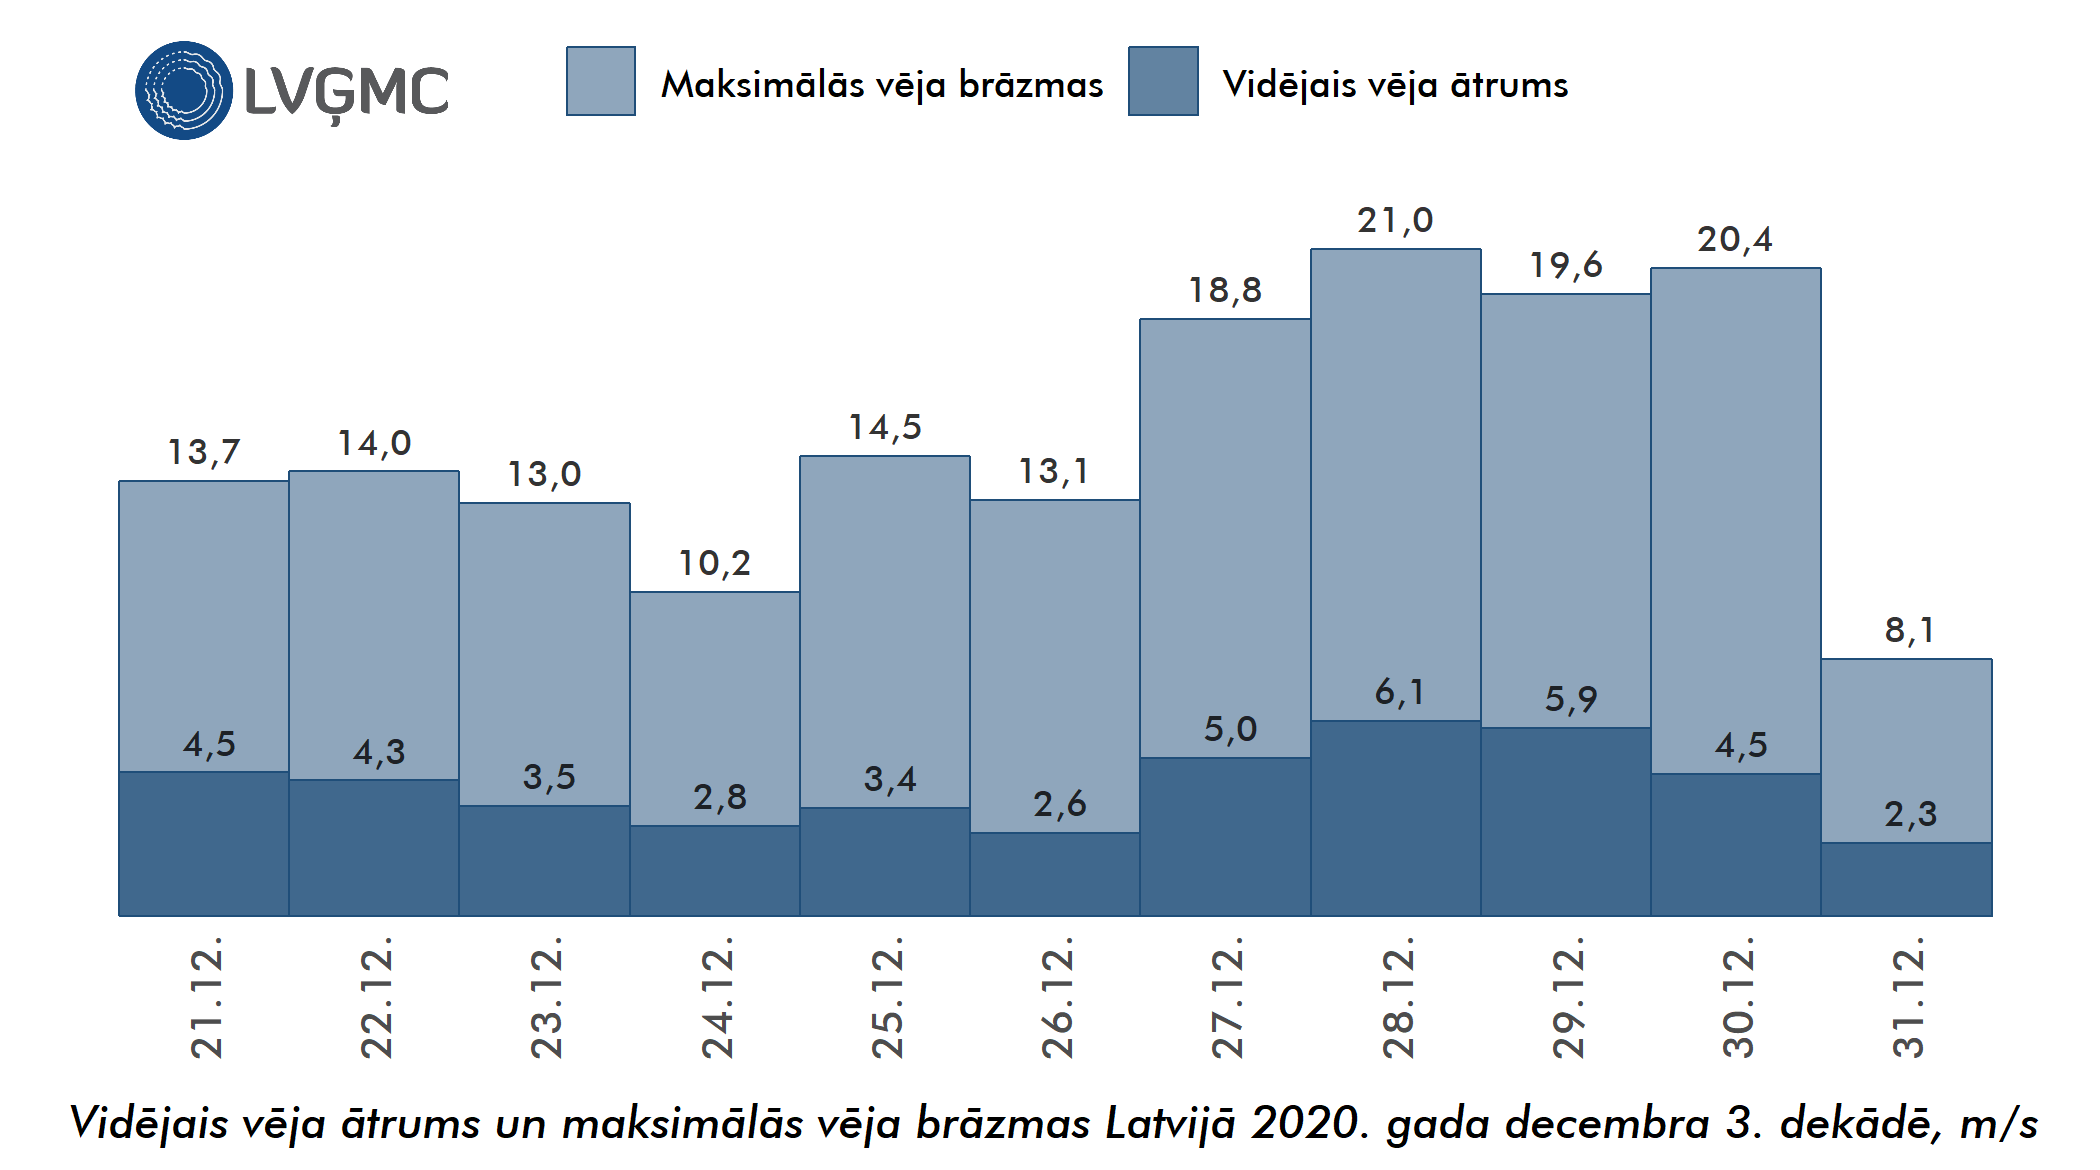 Vidējais un maksimālais vēja ātrums Lavijā 2020. gada decembra 3. dekādē, m/s